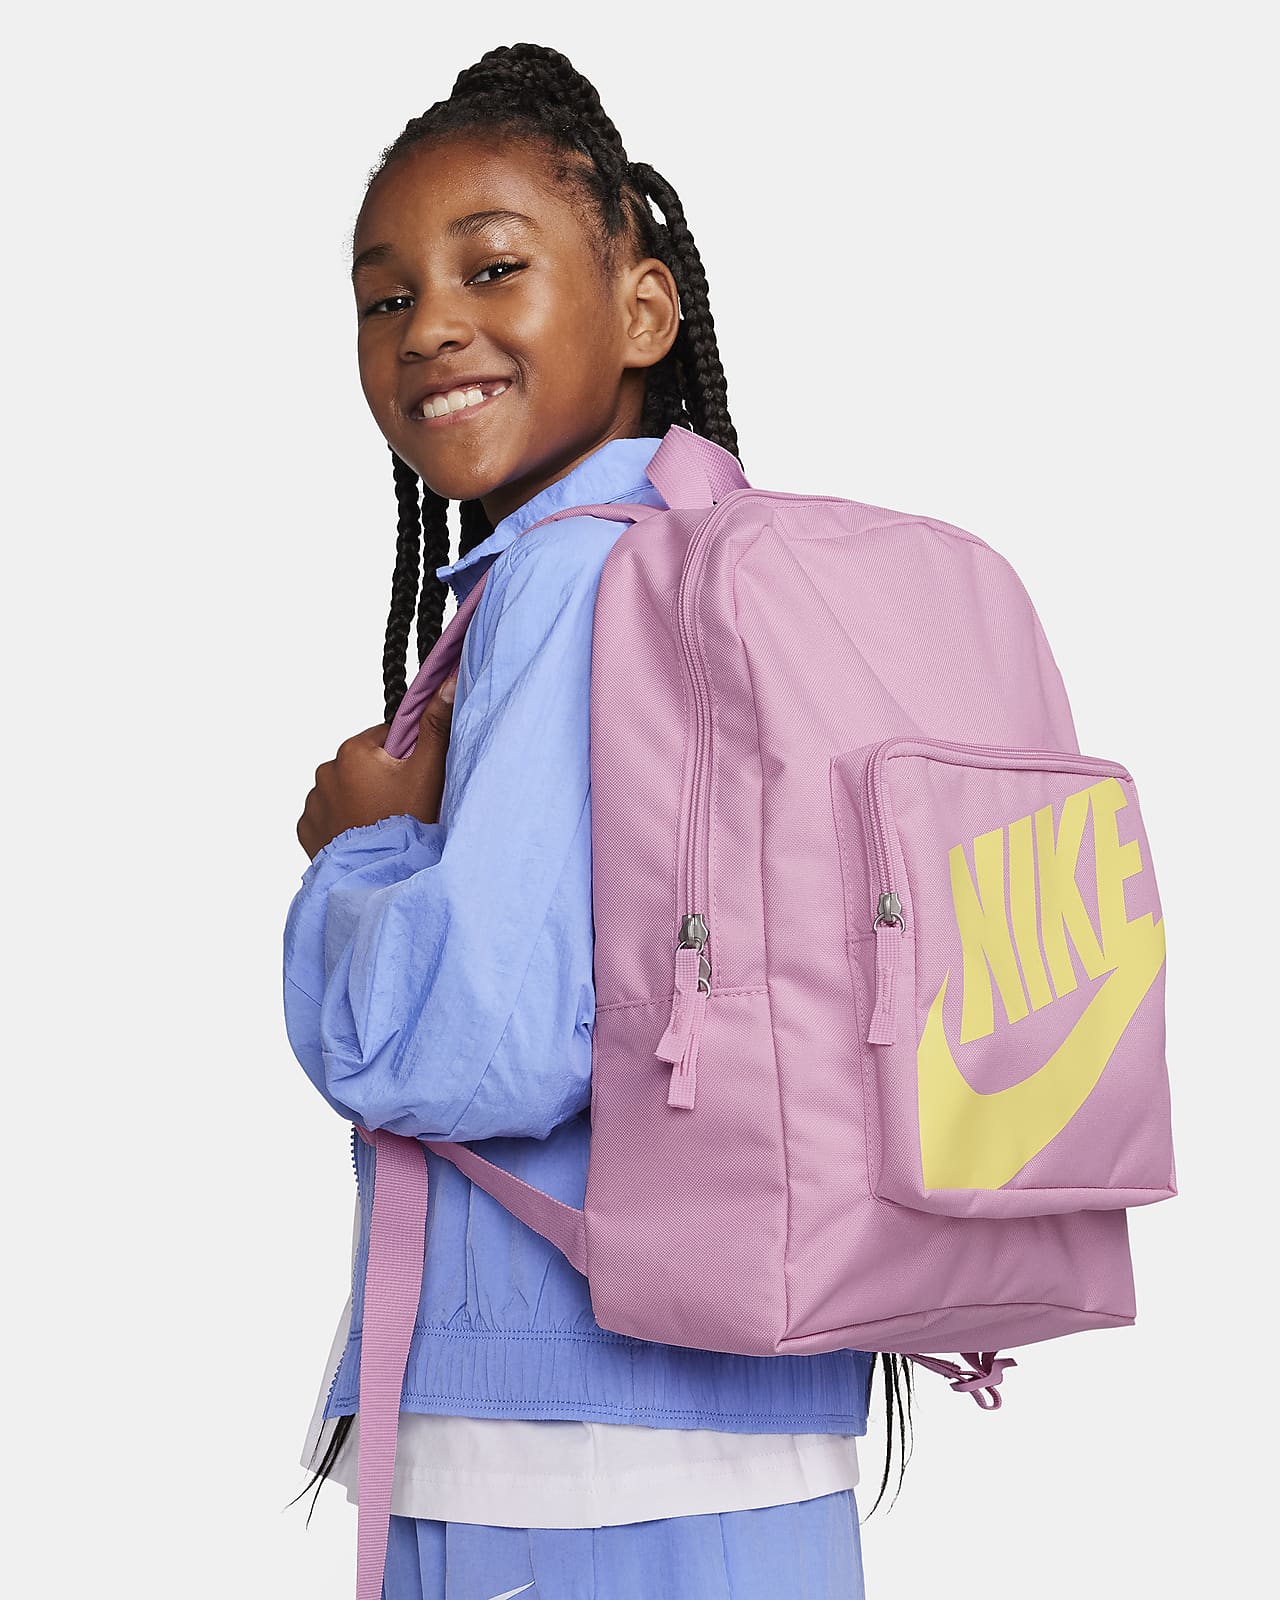 Plecak dziecięcy Nike Classic (16 l)